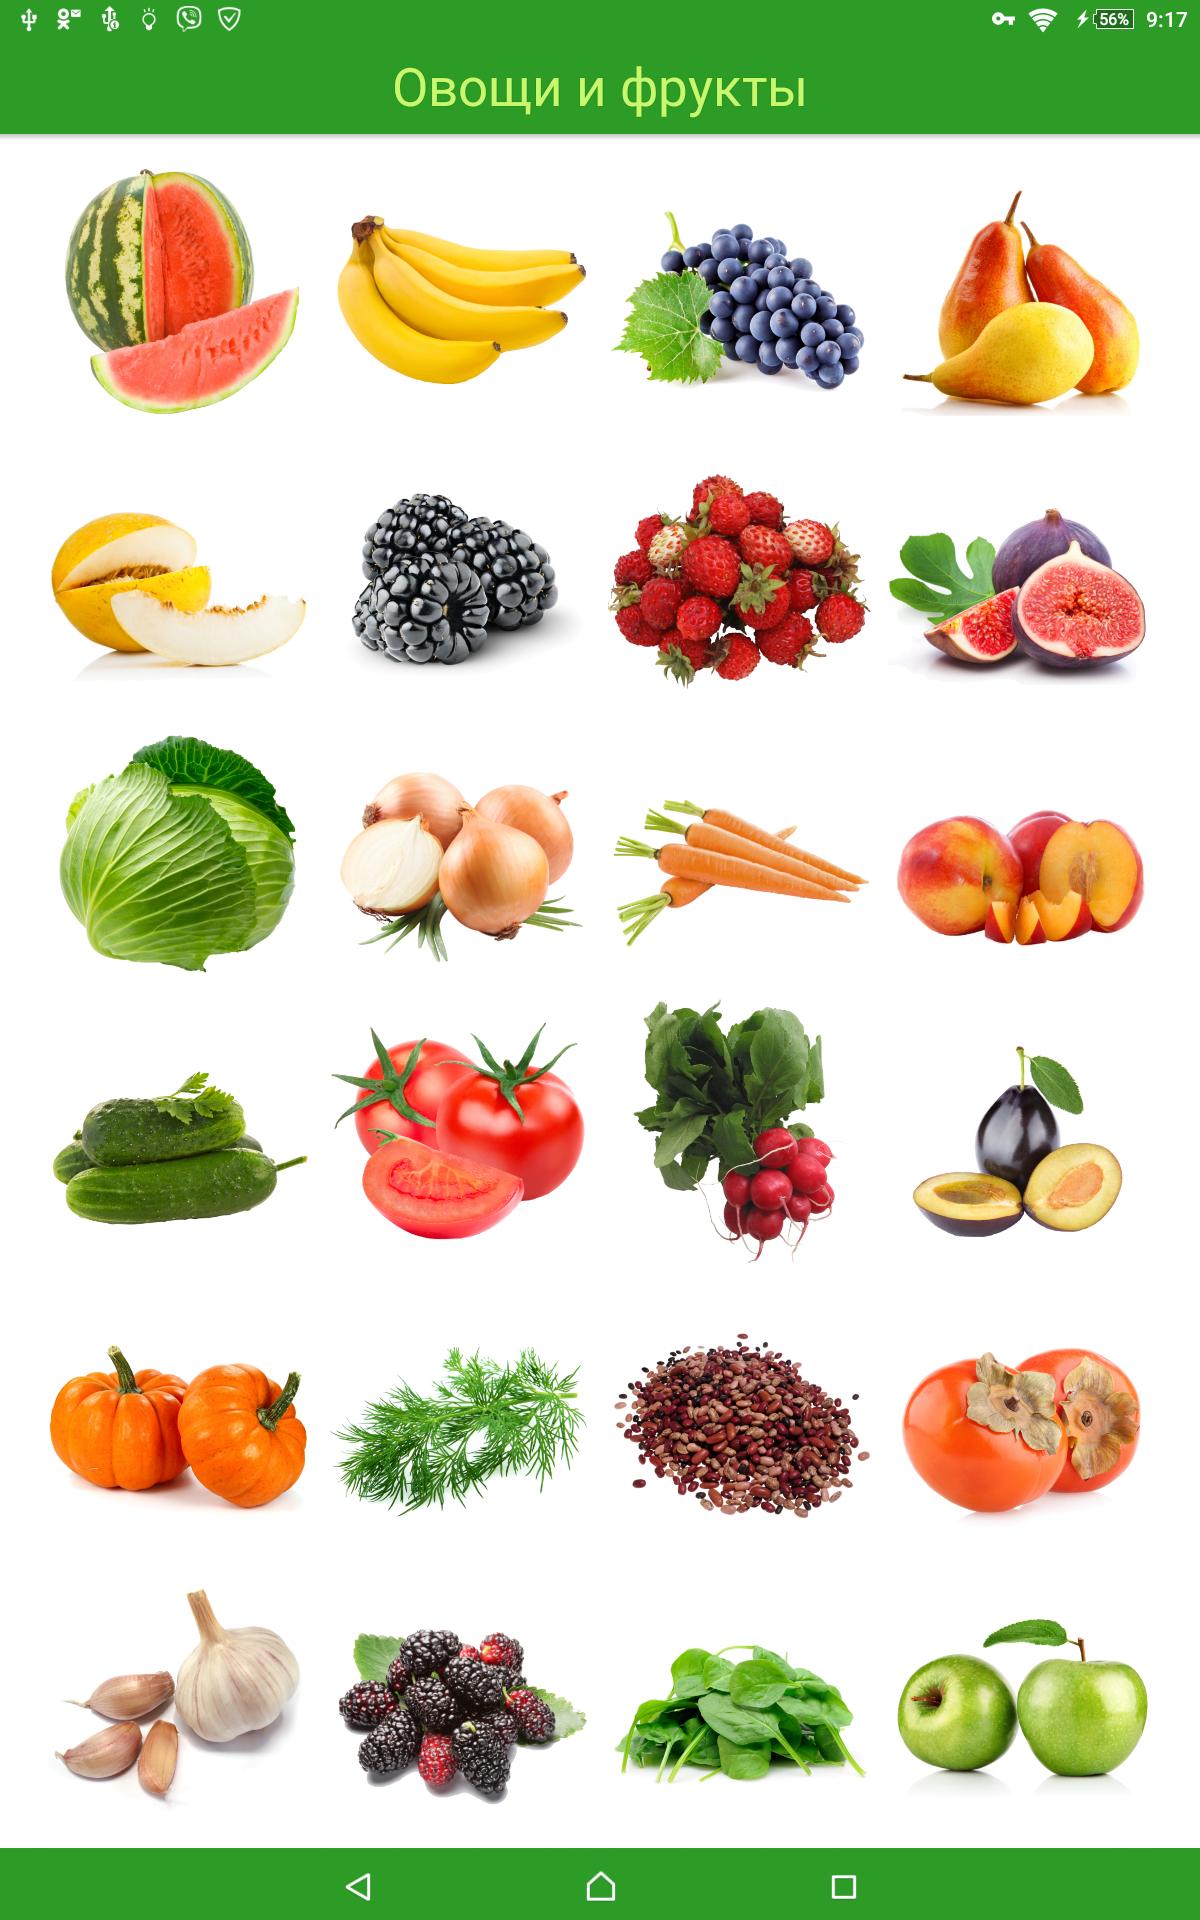 Какой фрукт на букву и. Овощи и фрукты. Азбука фрукты и овощи. Фрукты и овощи по алфавиту. Фрукты и овощи и ягоды по алфавиту.